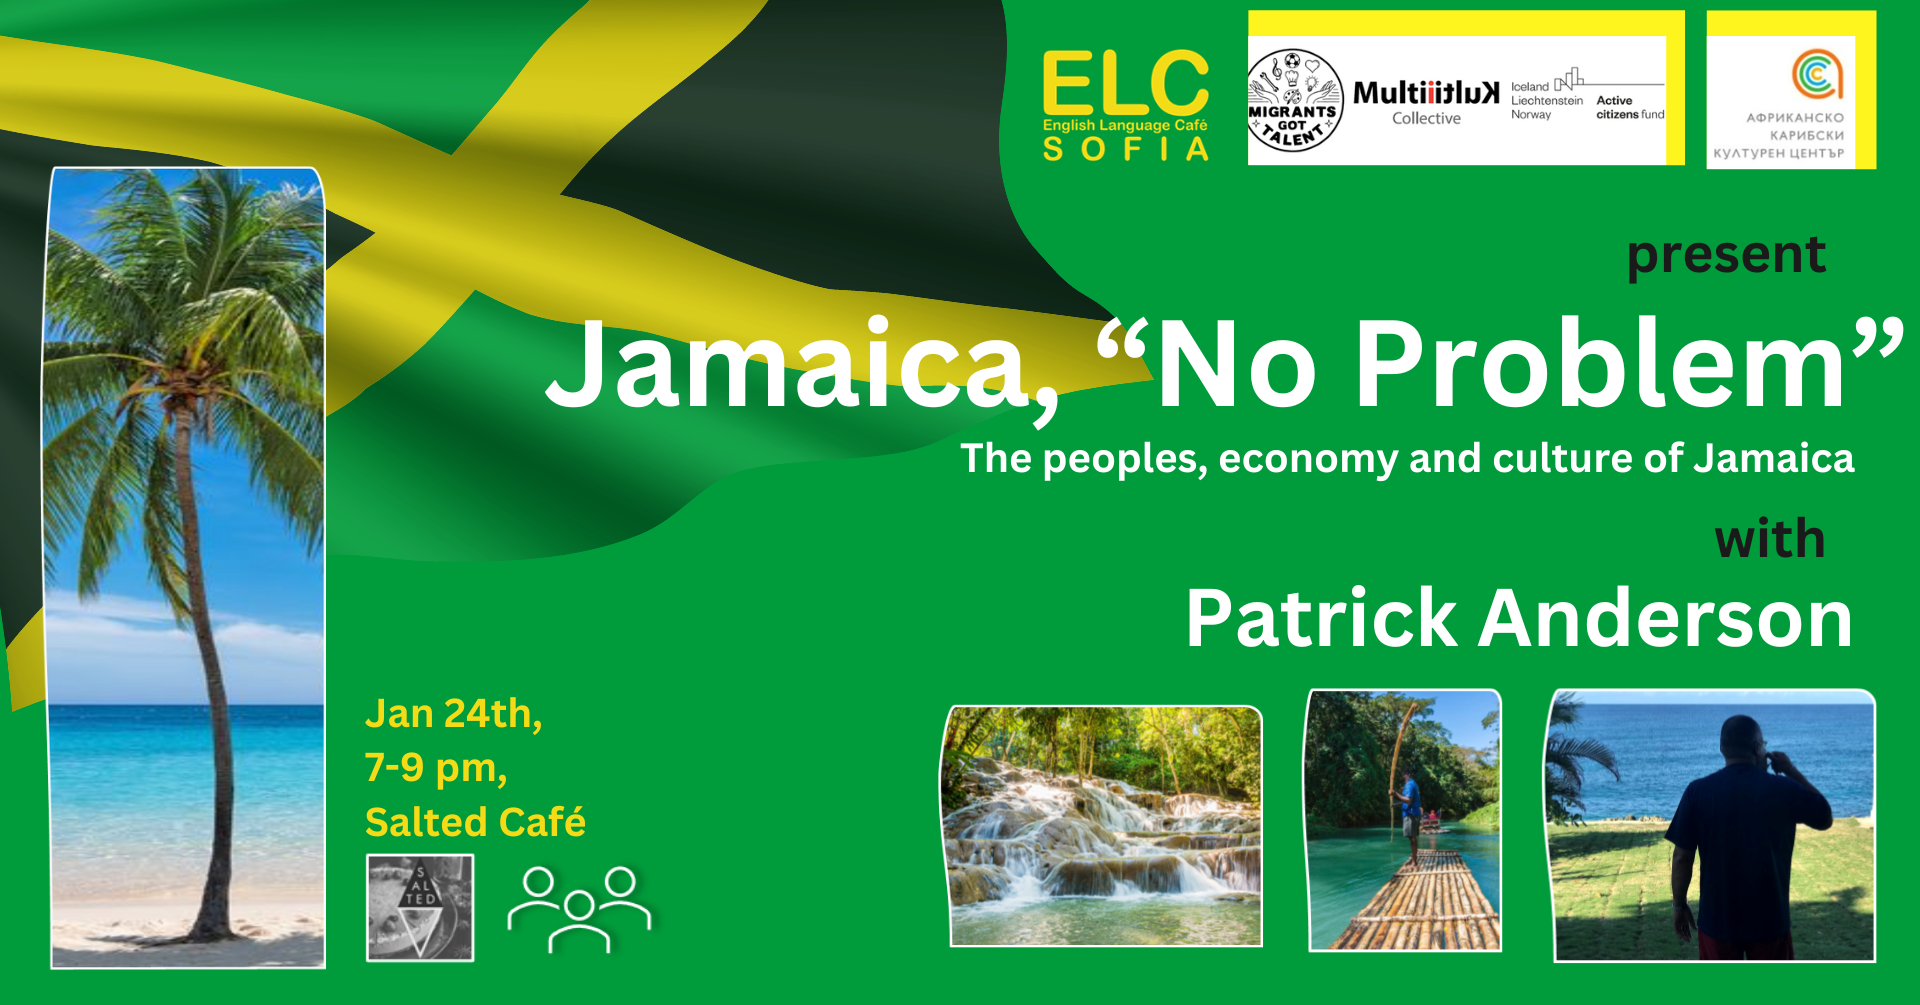 Лекция Jamaica, No Problem и дегустация